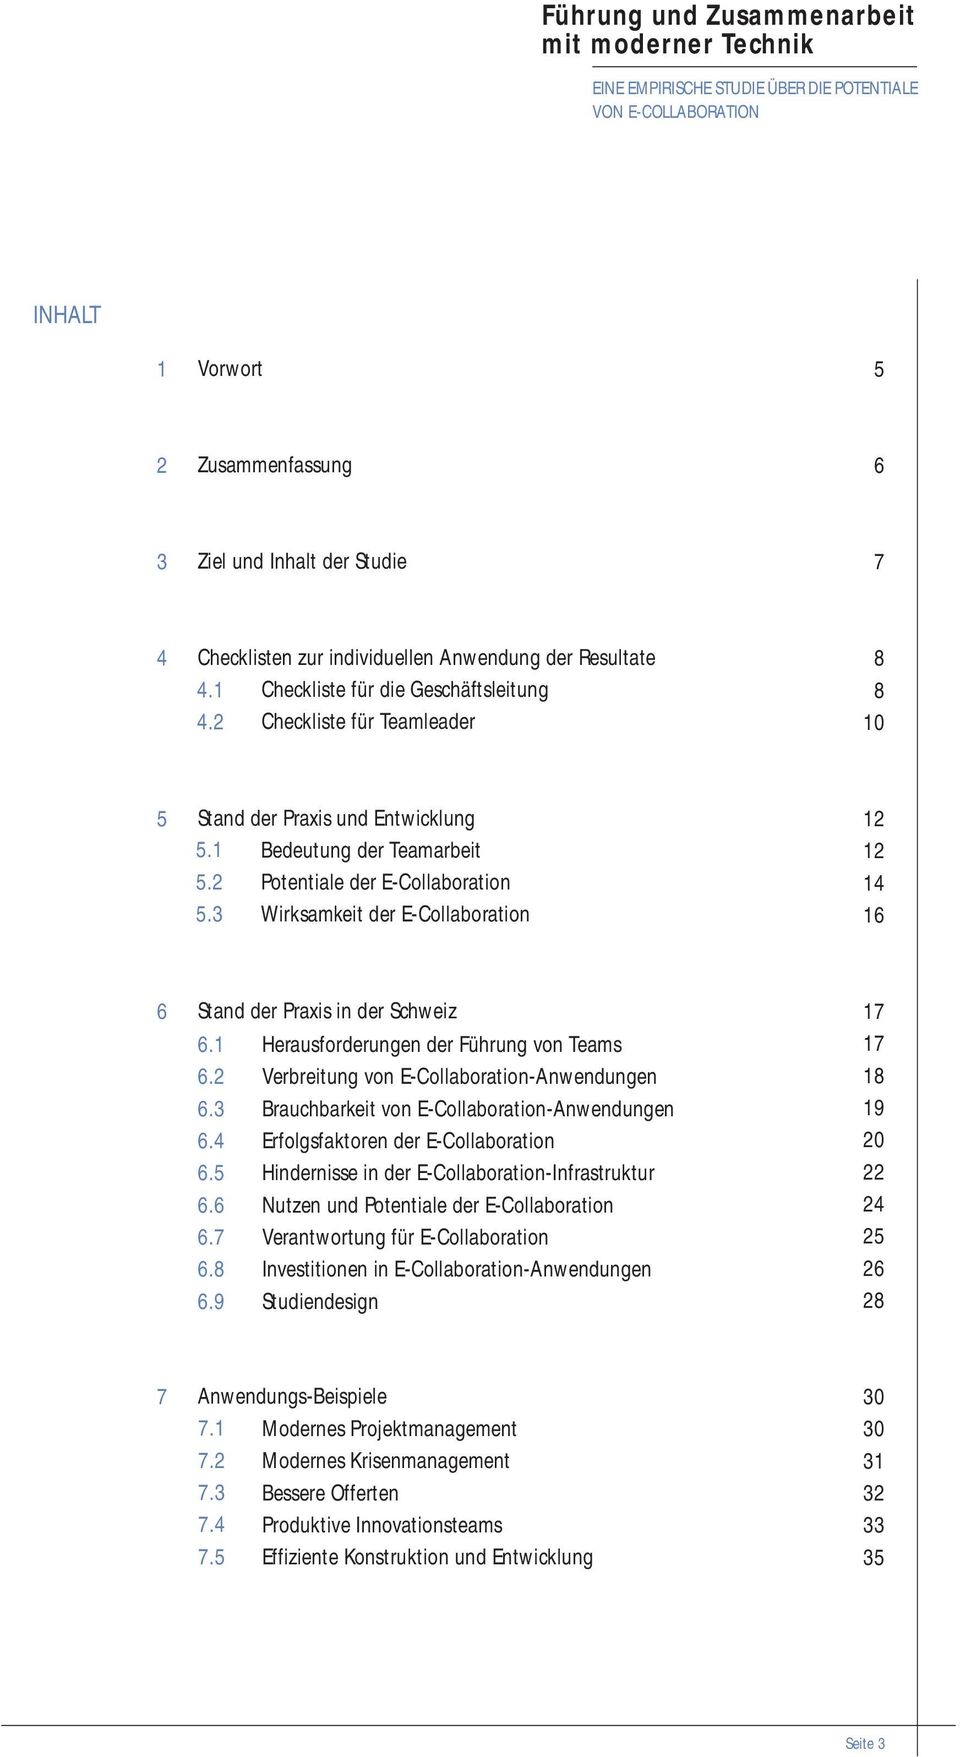 3 Wirksamkeit der E-Collaboration 12 12 14 16 6 Stand der Praxis in der Schweiz 6.1 6.2 6.3 6.4 6.5 6.6 6.7 6.8 6.